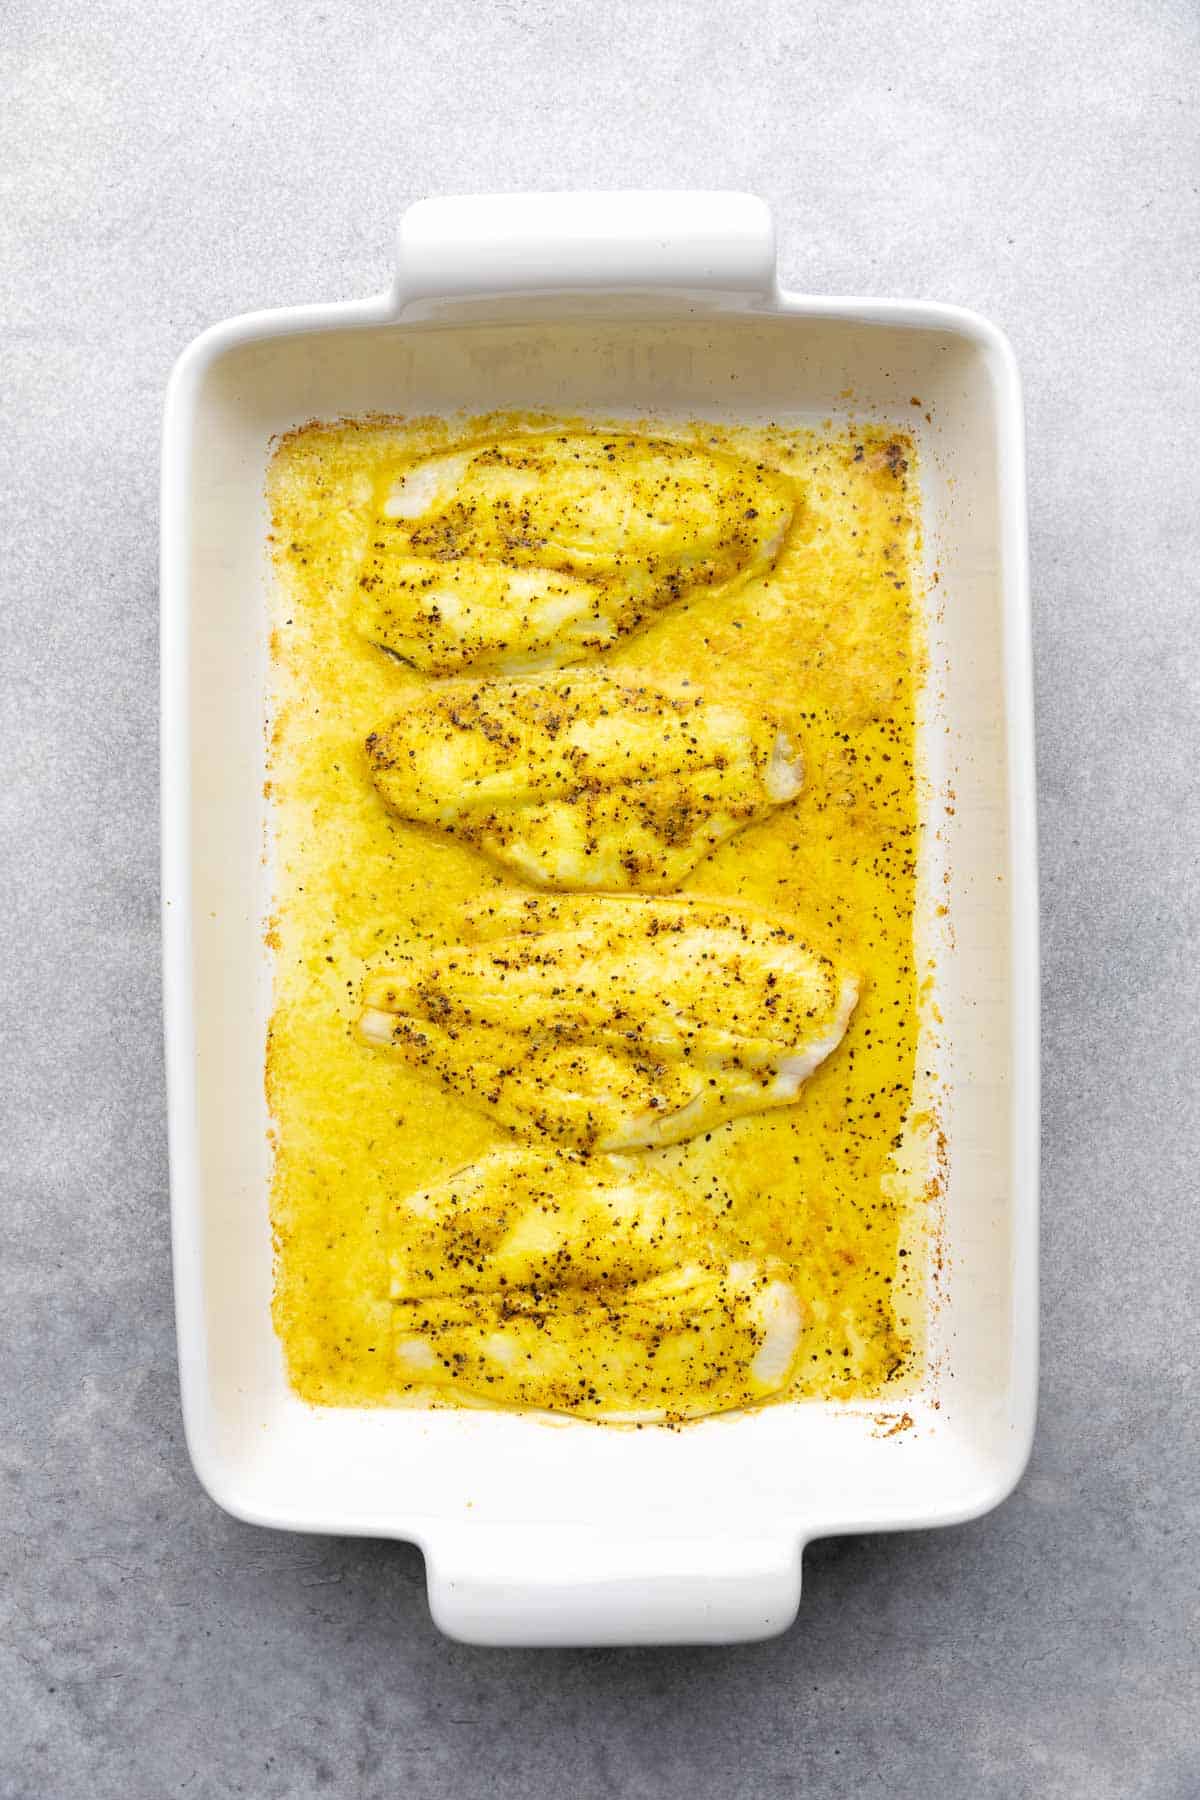 Oven baked lemon pepper flounder in a white baking dish.